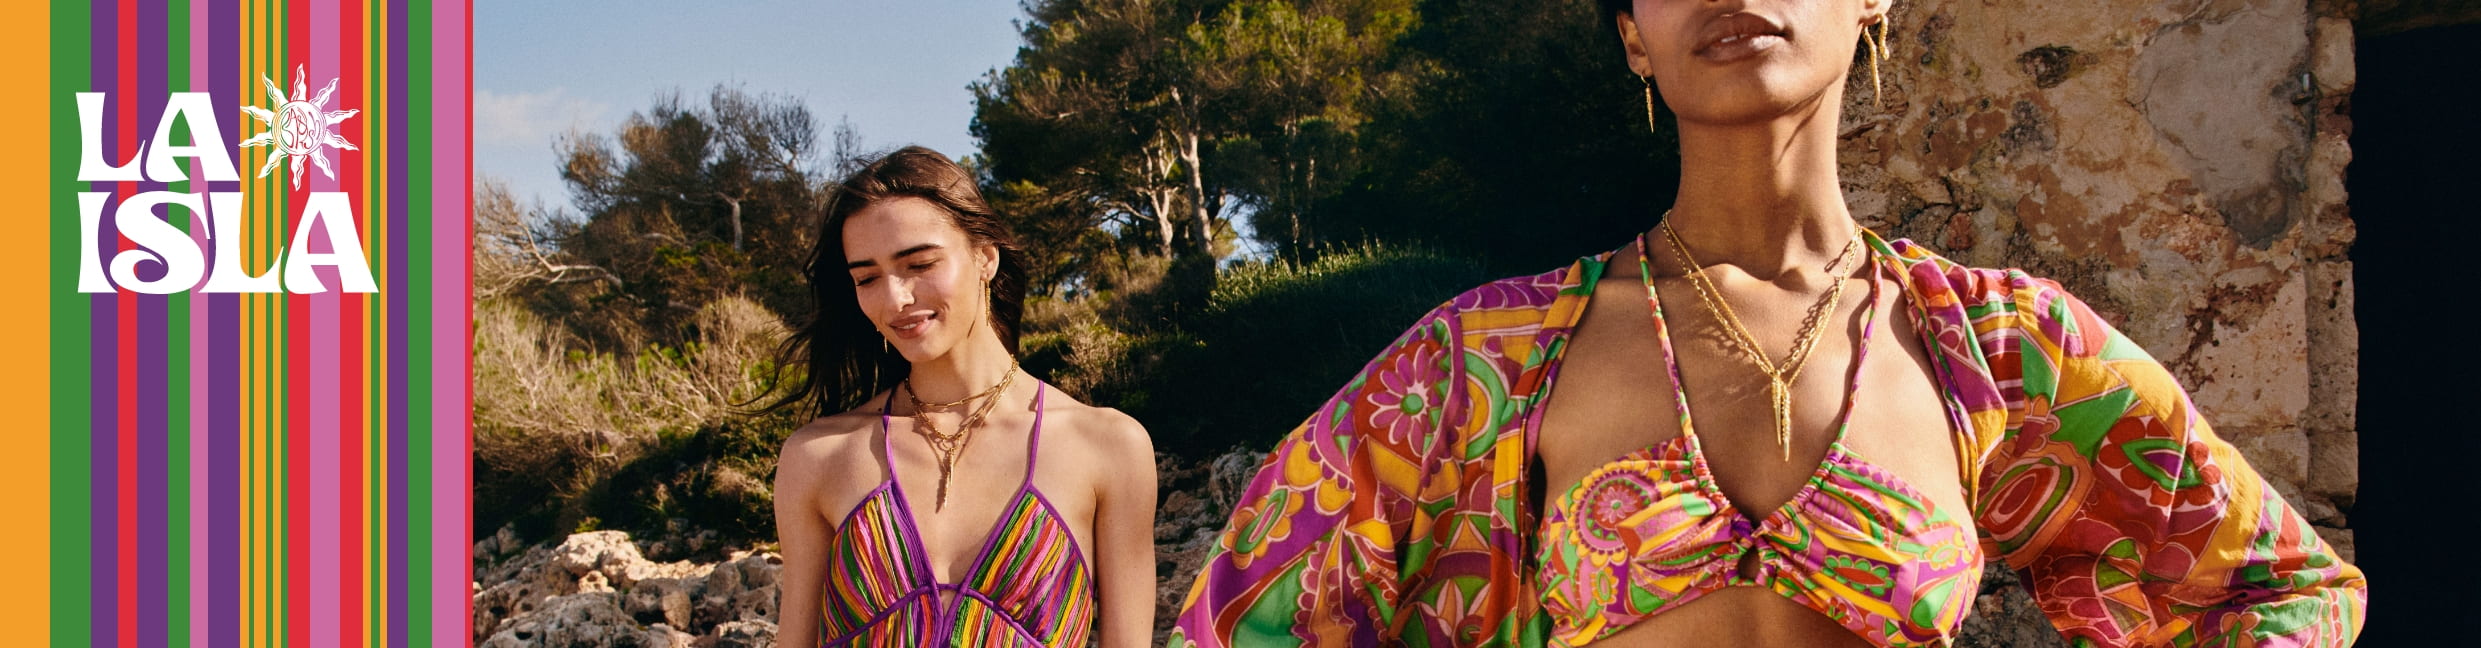 Colección La Isla - vestidos de verano, ropa playa Havaianas | ba&sh ES